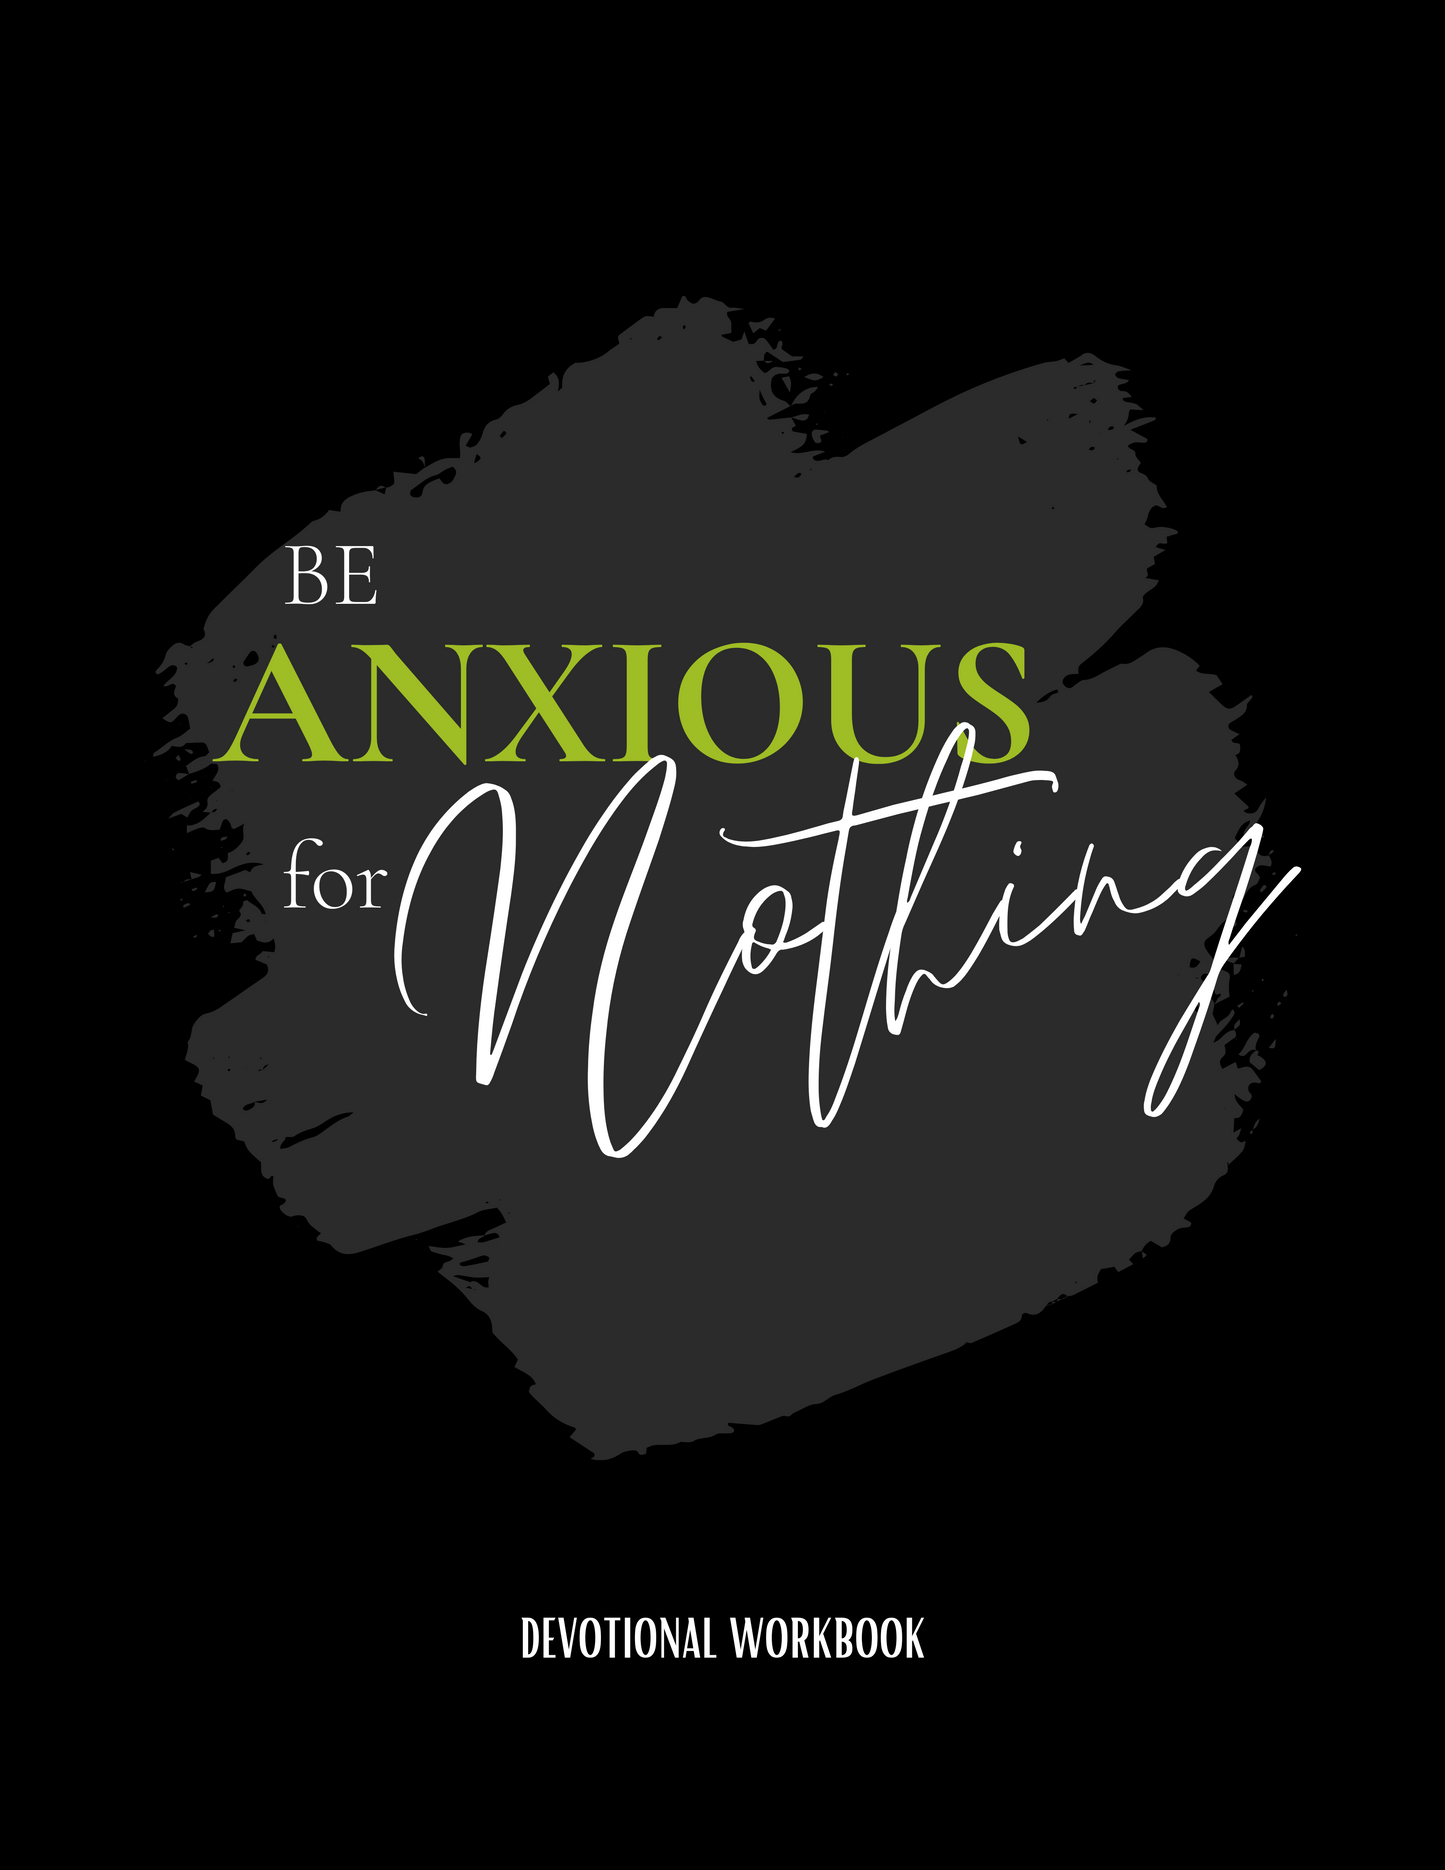 Devotional Workbook for Anxiety